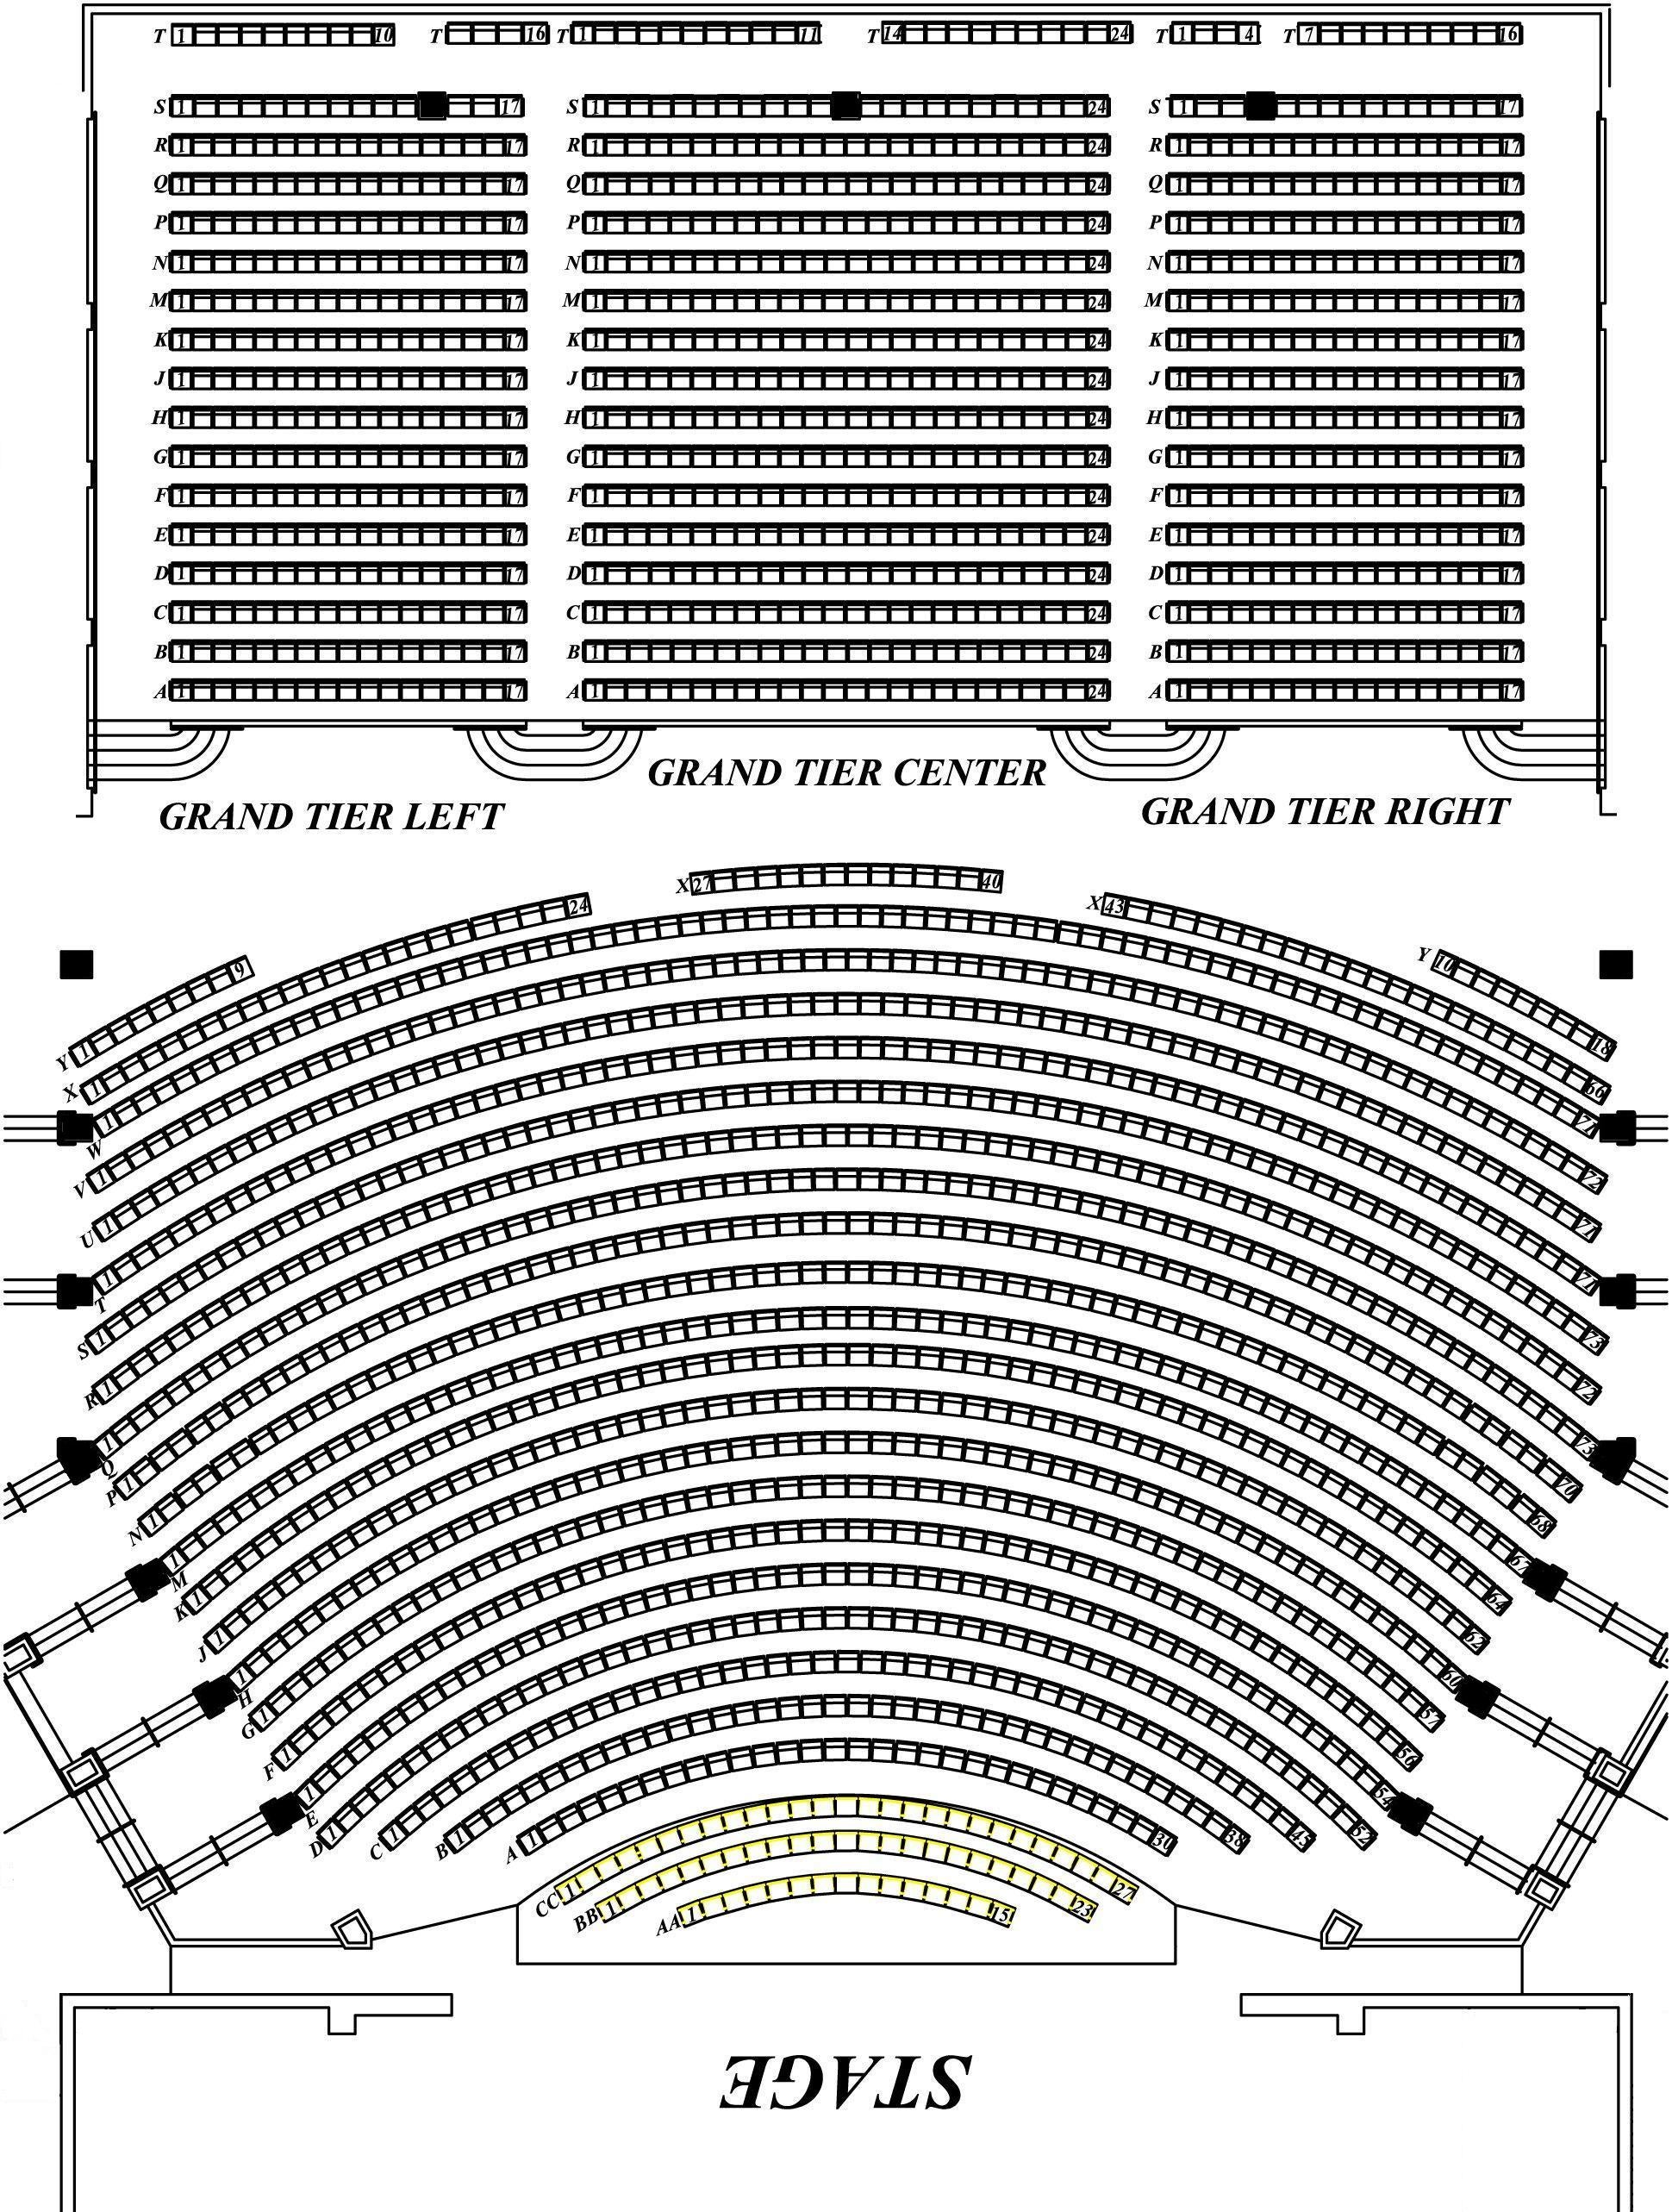 Seating Charts North Charleston Coliseum Performing Arts.